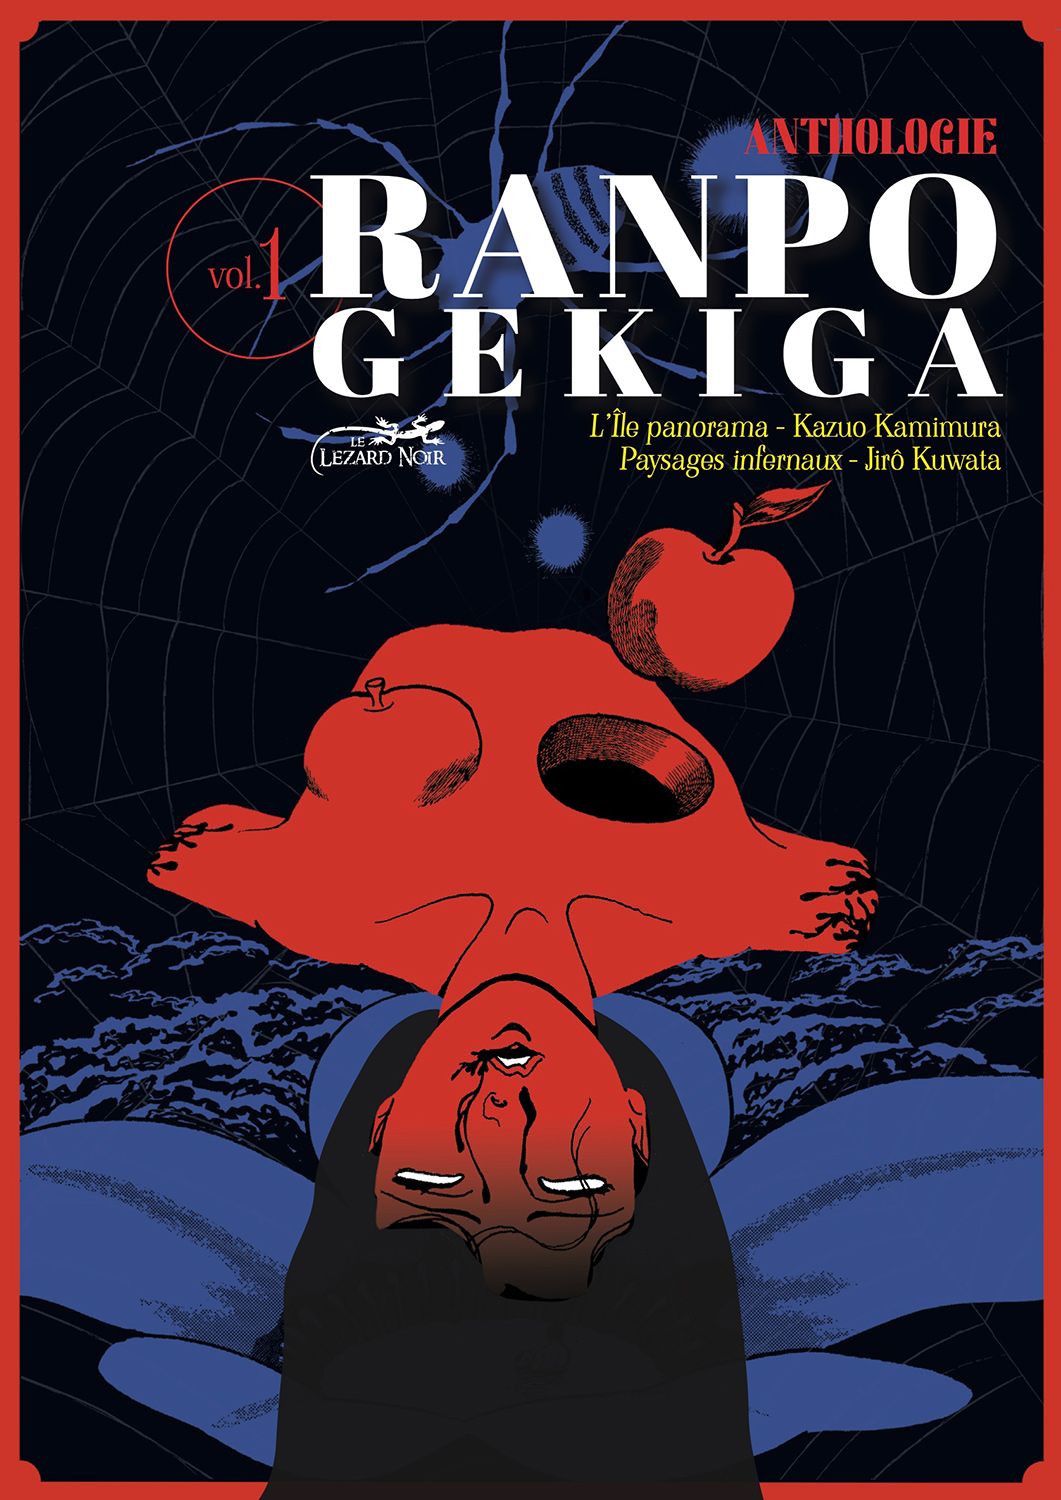 Ranpo Gekiga - L'anthologie Ranpo-gekiga-1-lezard